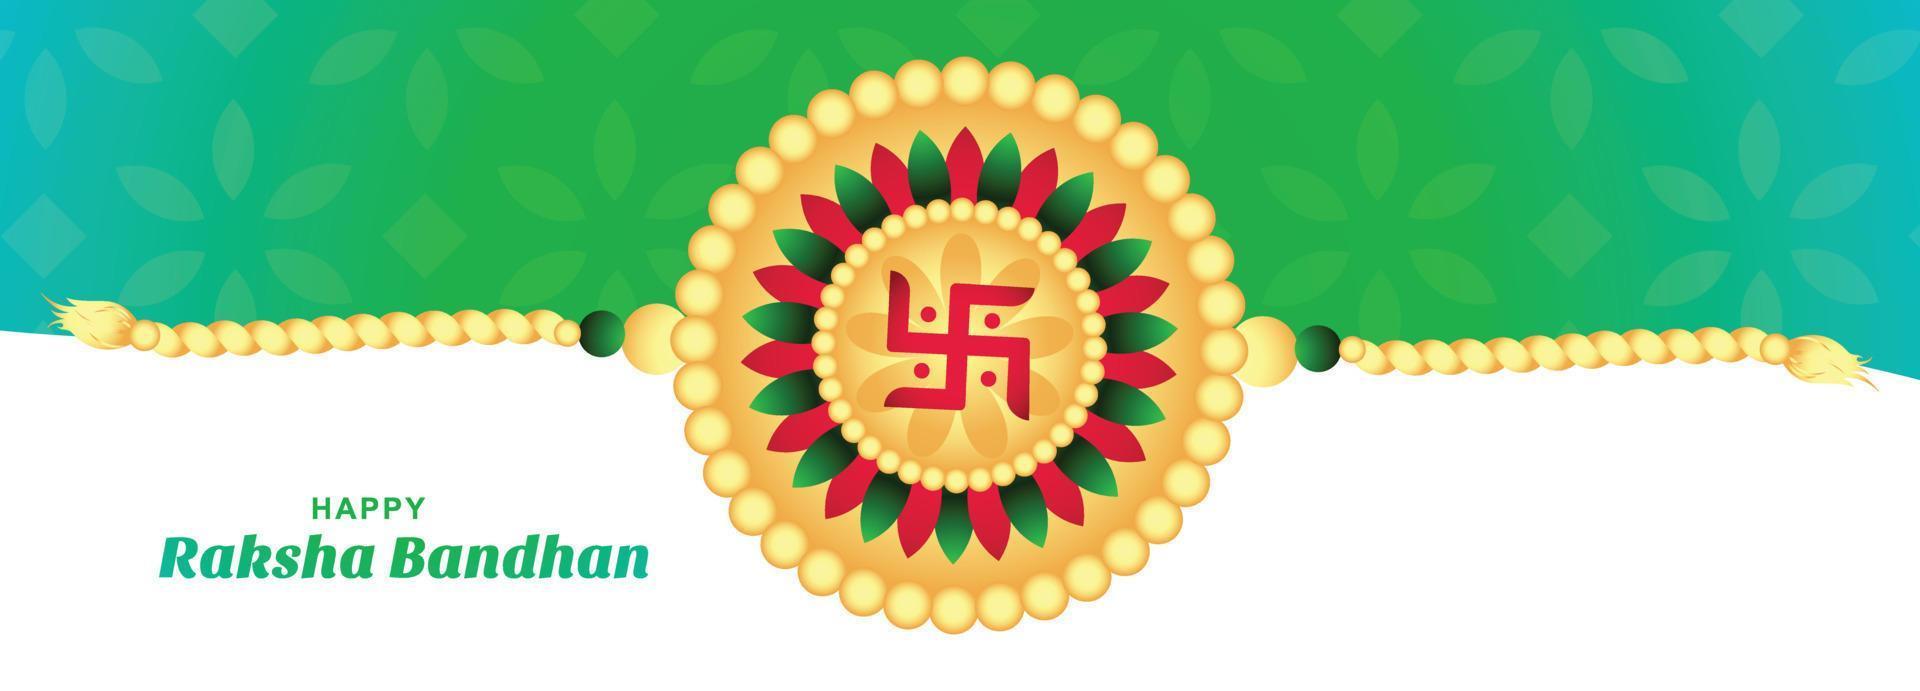 feliz raksha bandhan en el diseño decorativo de la pancarta de la tarjeta del festival rakhi vector